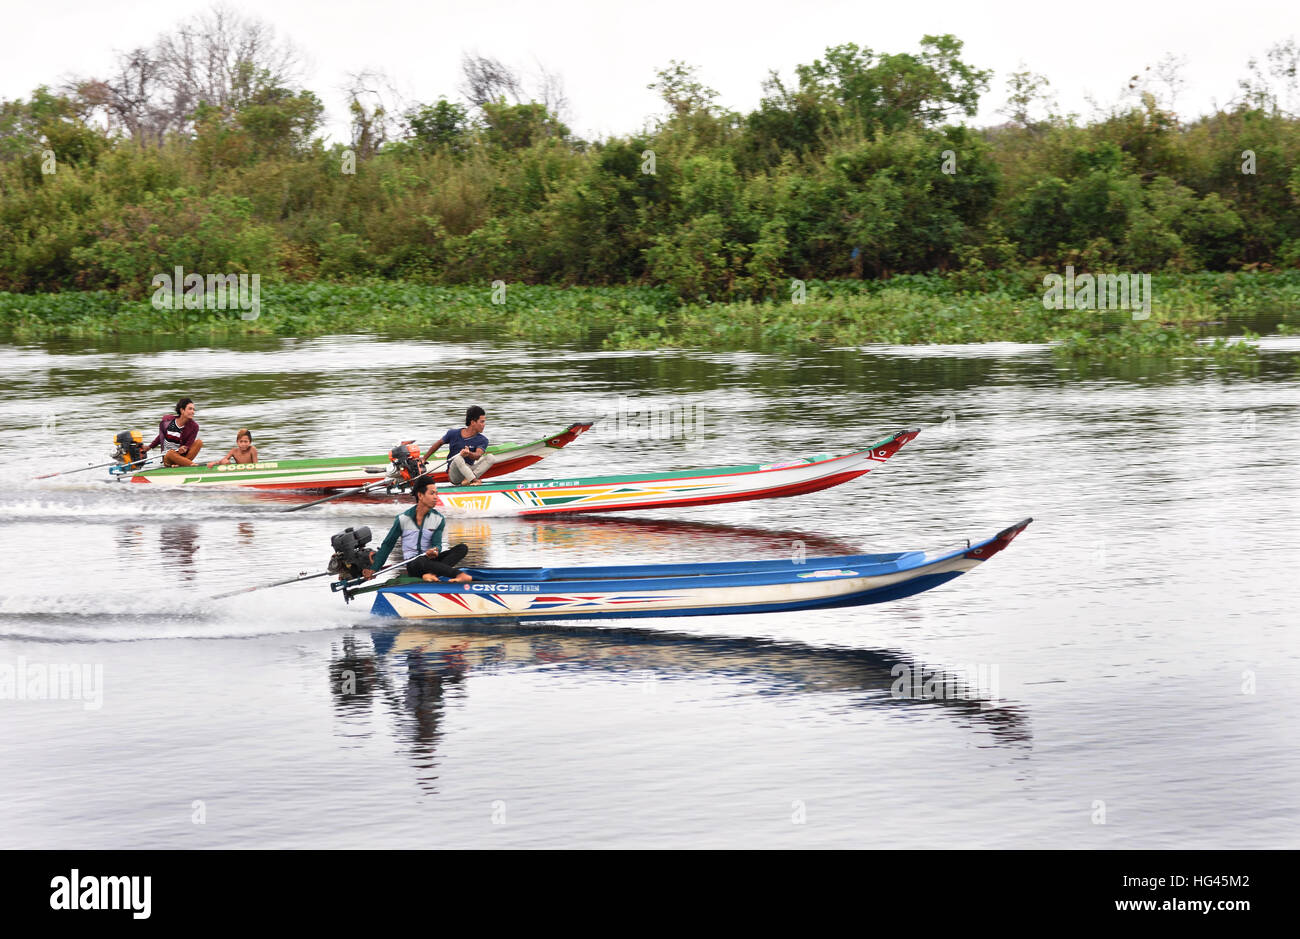 Los hombres jóvenes de carreras de barcos en el río Sangker Sangkhae - La provincia de Battambang, Camboya.el lago de agua dulce Tonlé Sap ( lago de pesca más ricos del mundo ) se drena en el río Mekong en Phnom Penh. La población camboyana local también se ha adaptado a la ecología única del lago flotante ( pescadores -pesquería ) aldeas y casas tiesos. Foto de stock